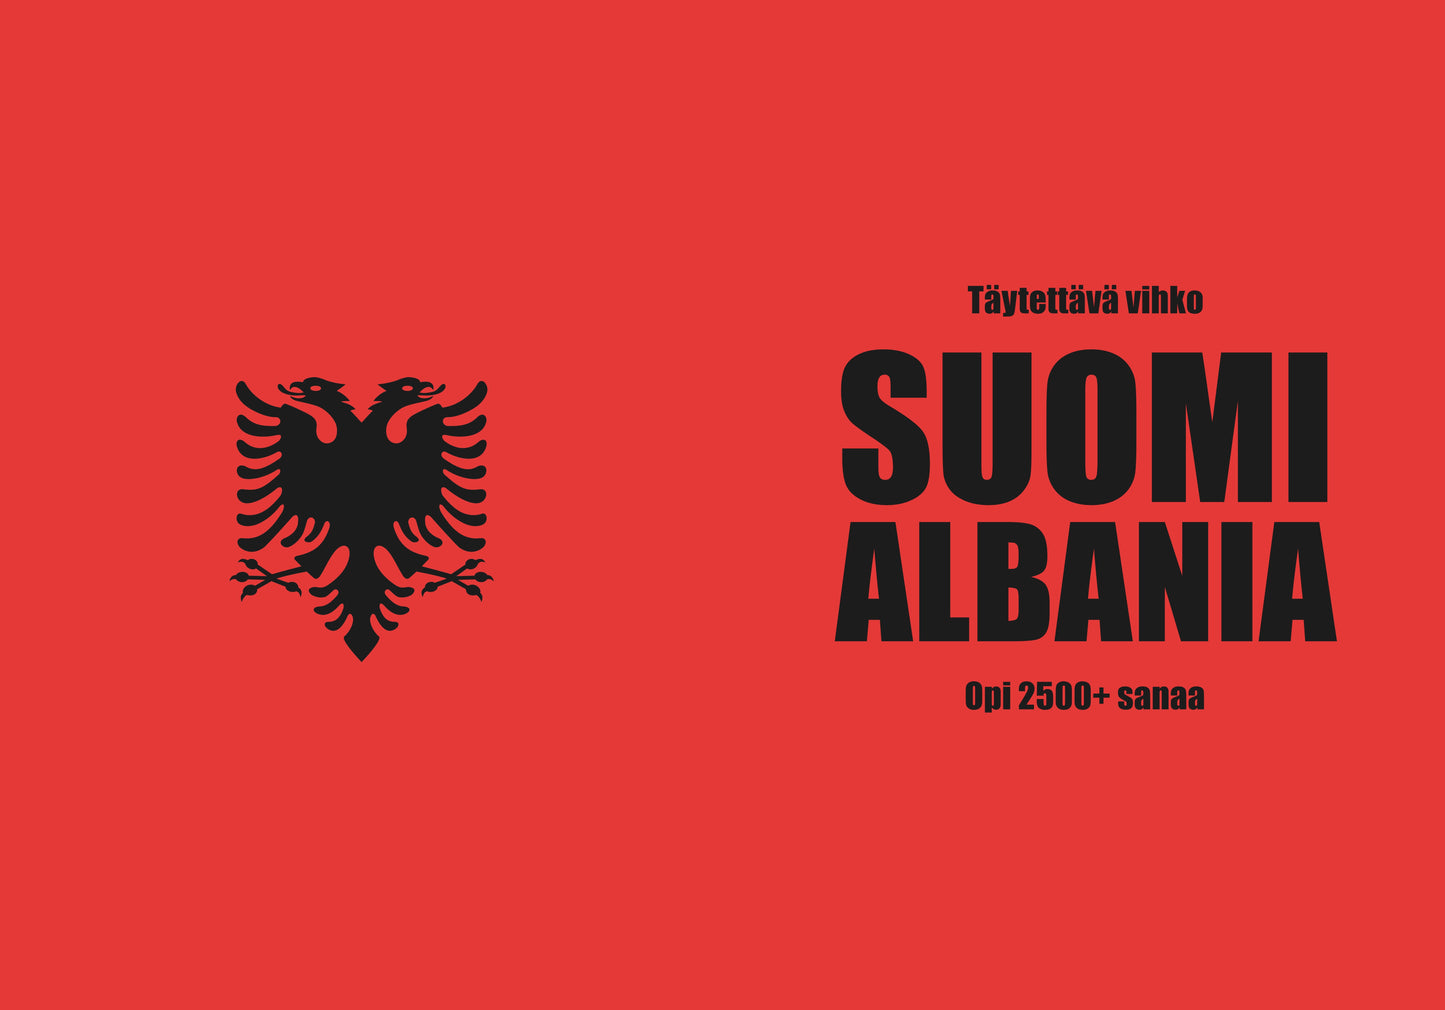 Albania täytettävä vihko 